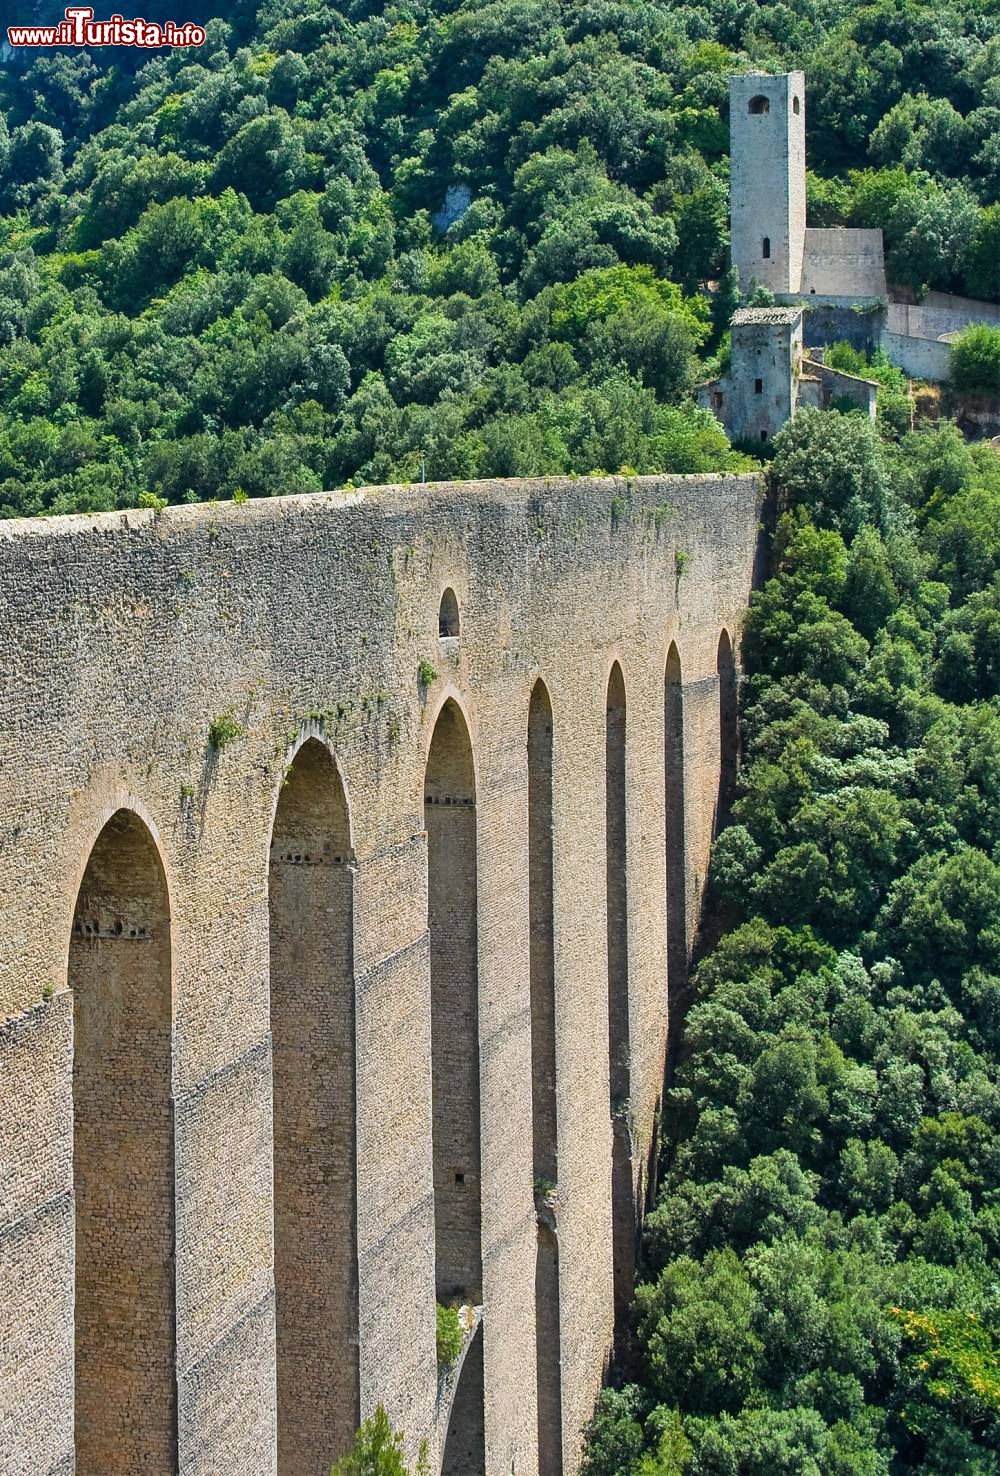 Immagine Particolare delle arcate del Ponte delle Torri di Spoleto